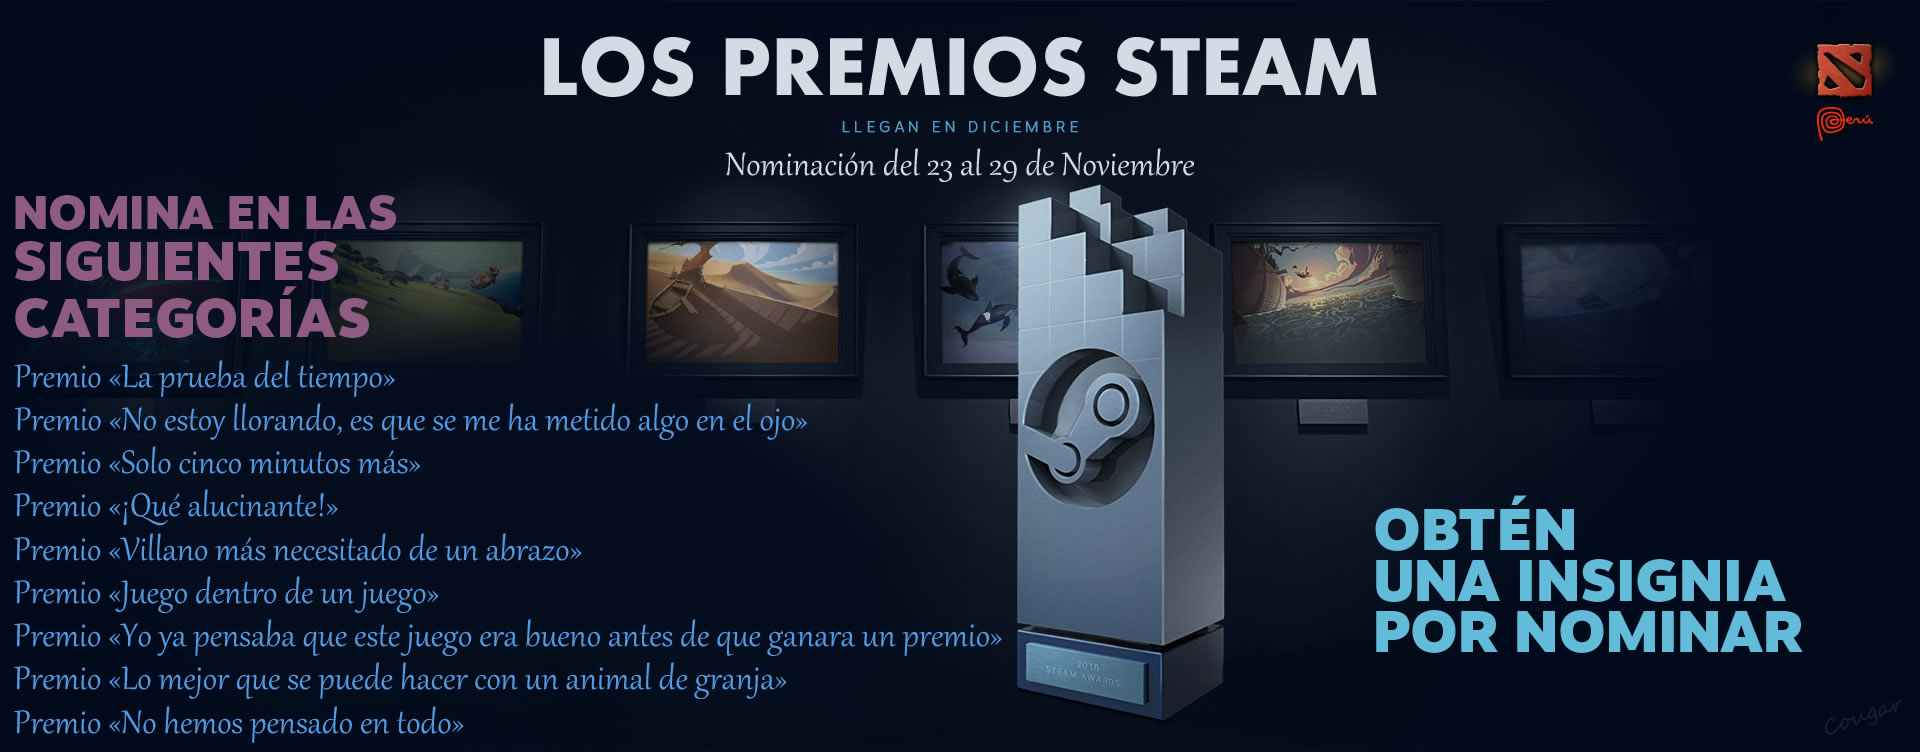 los-premios-steam